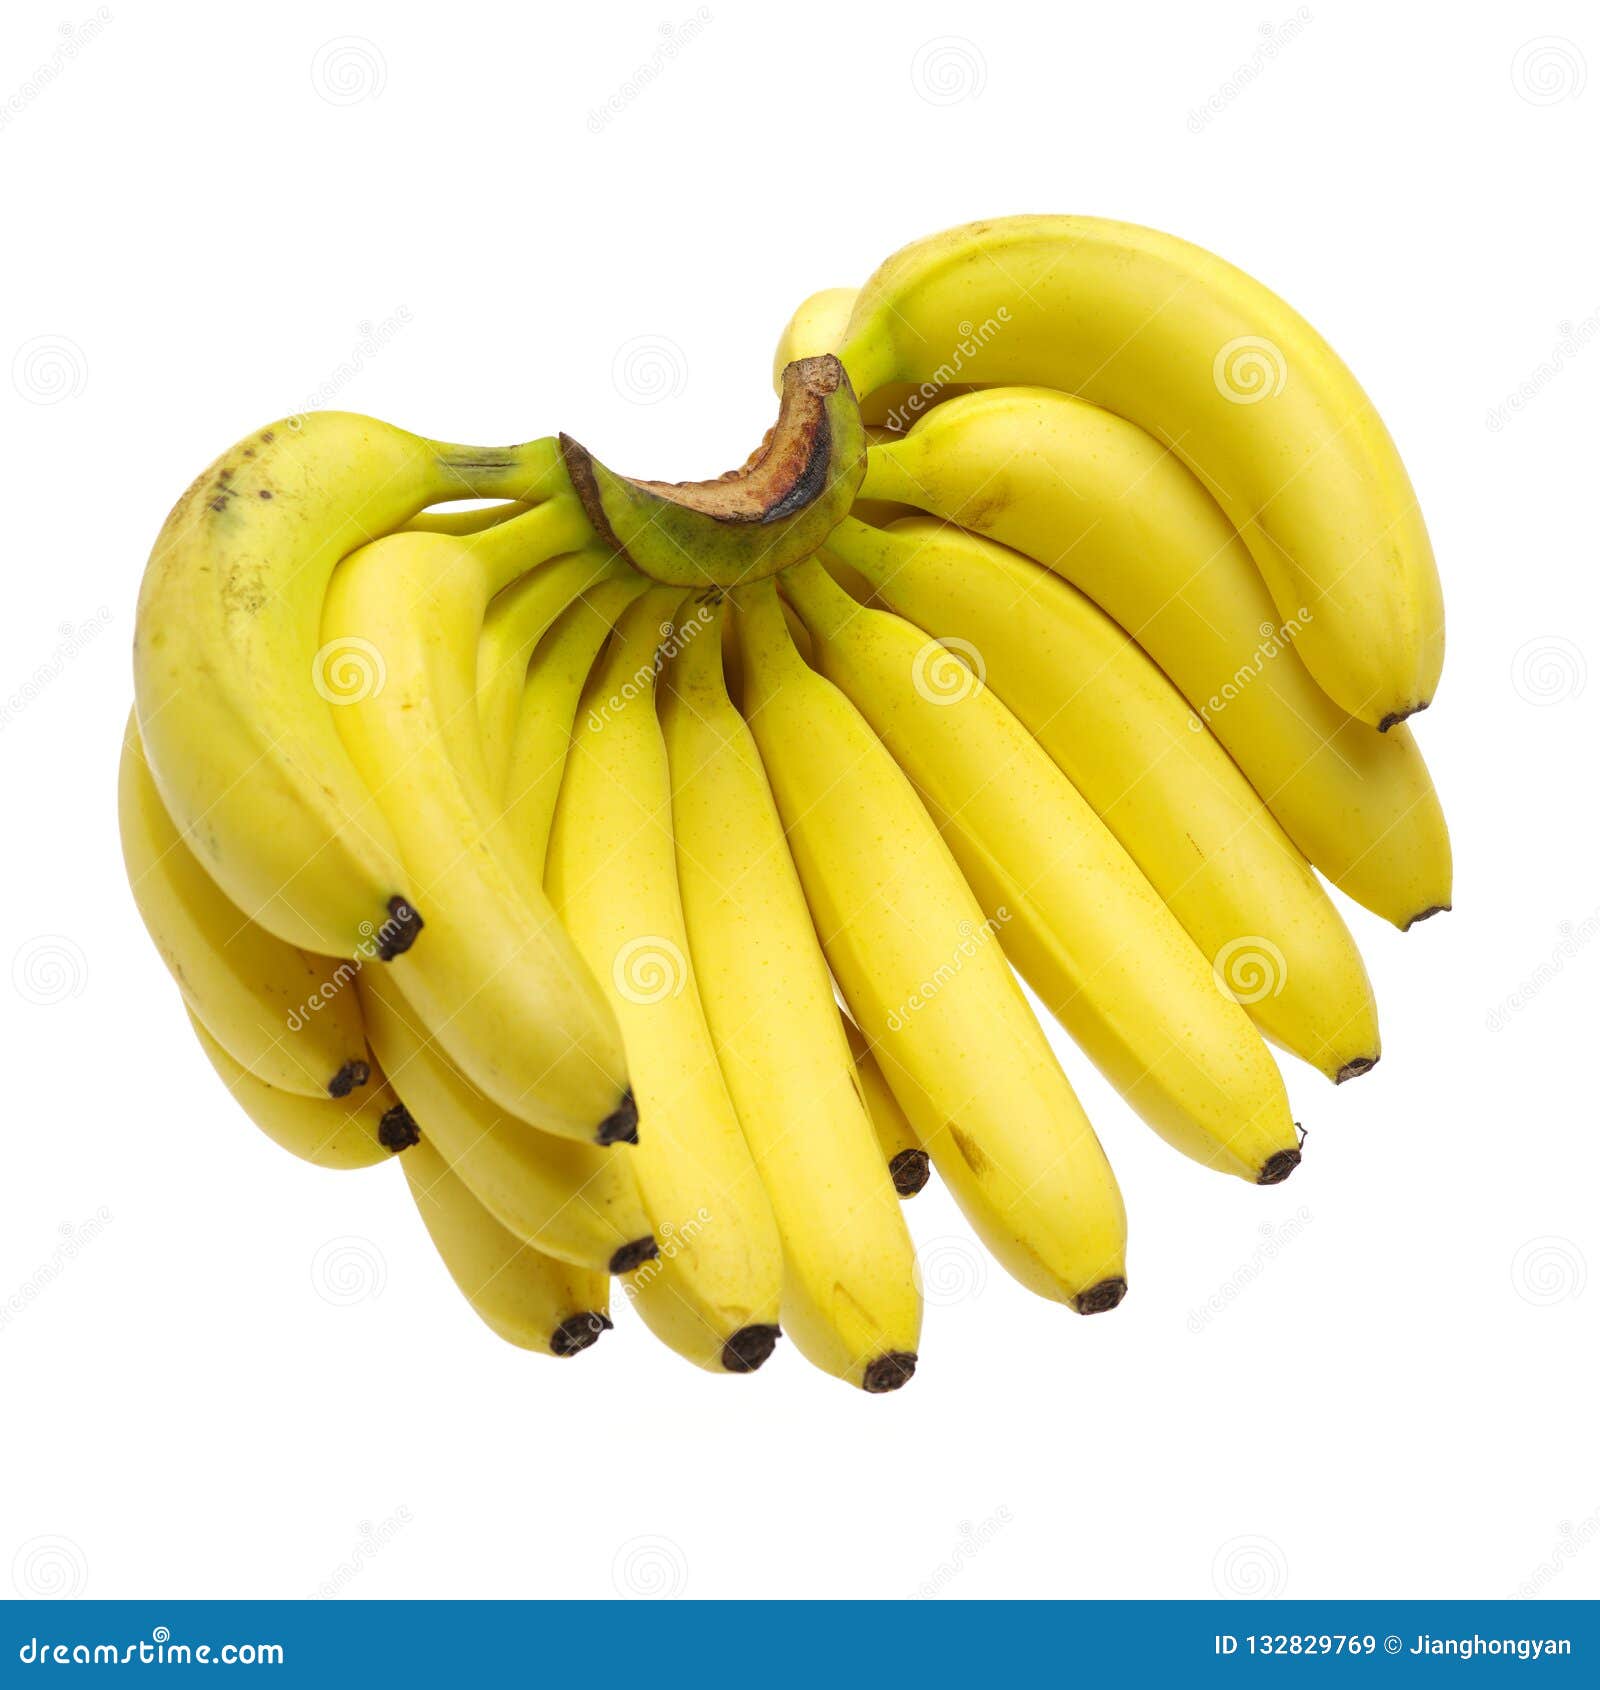 Banana bunch stock image. Image of banana, ingredient - 132829769